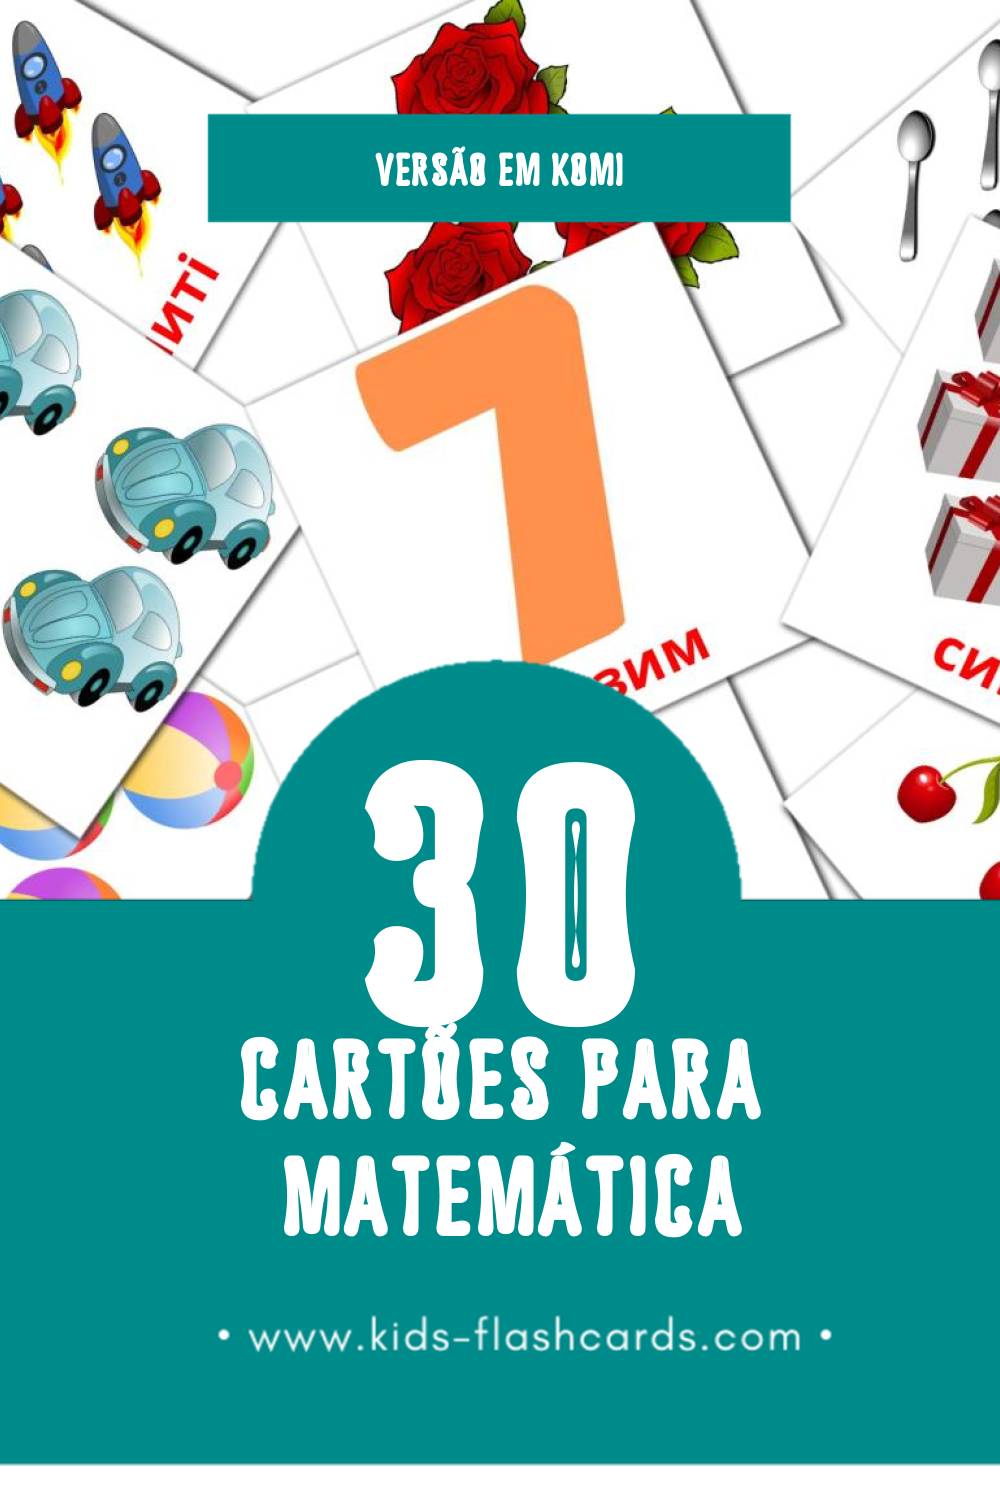 Flashcards de Математика Visuais para Toddlers (30 cartões em Komi)